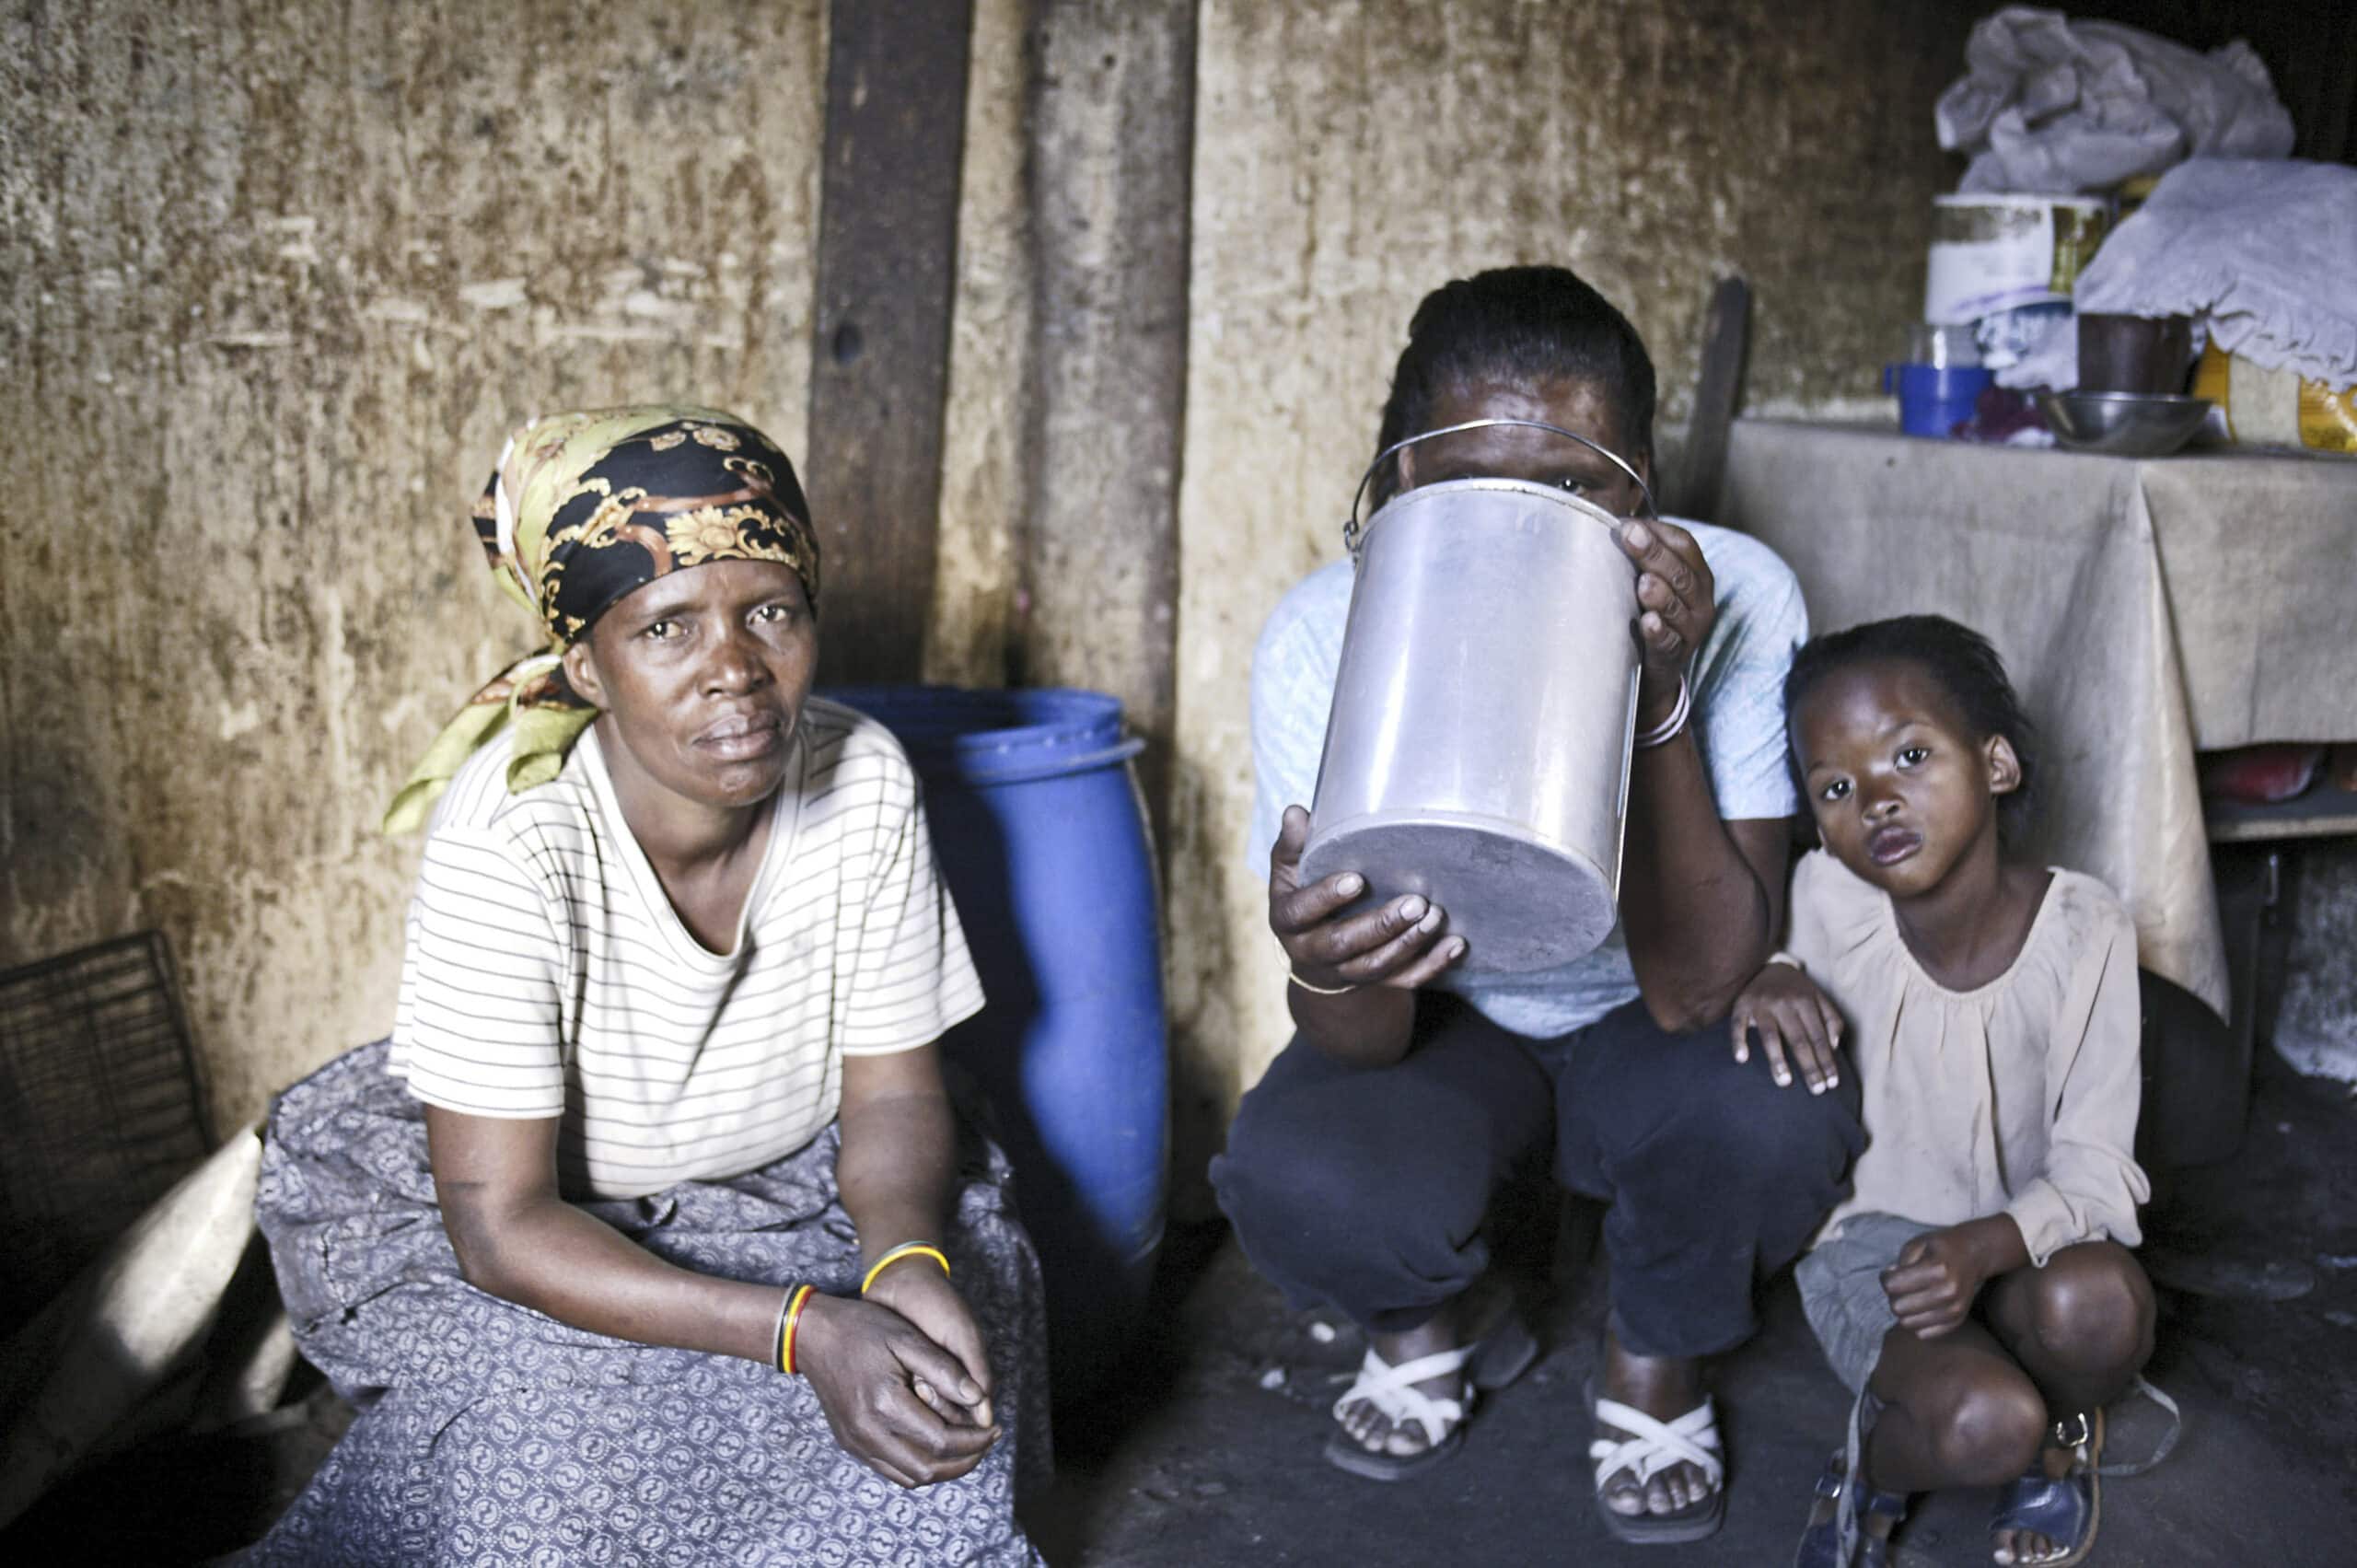 Eine Familie in einem schwach beleuchteten Raum. Eine Frau sitzt da und hält ein kleines Kind, neben ihnen steht ein Mann, der Wasser aus einem Krug gießt. © Fotografie Tomas Rodriguez